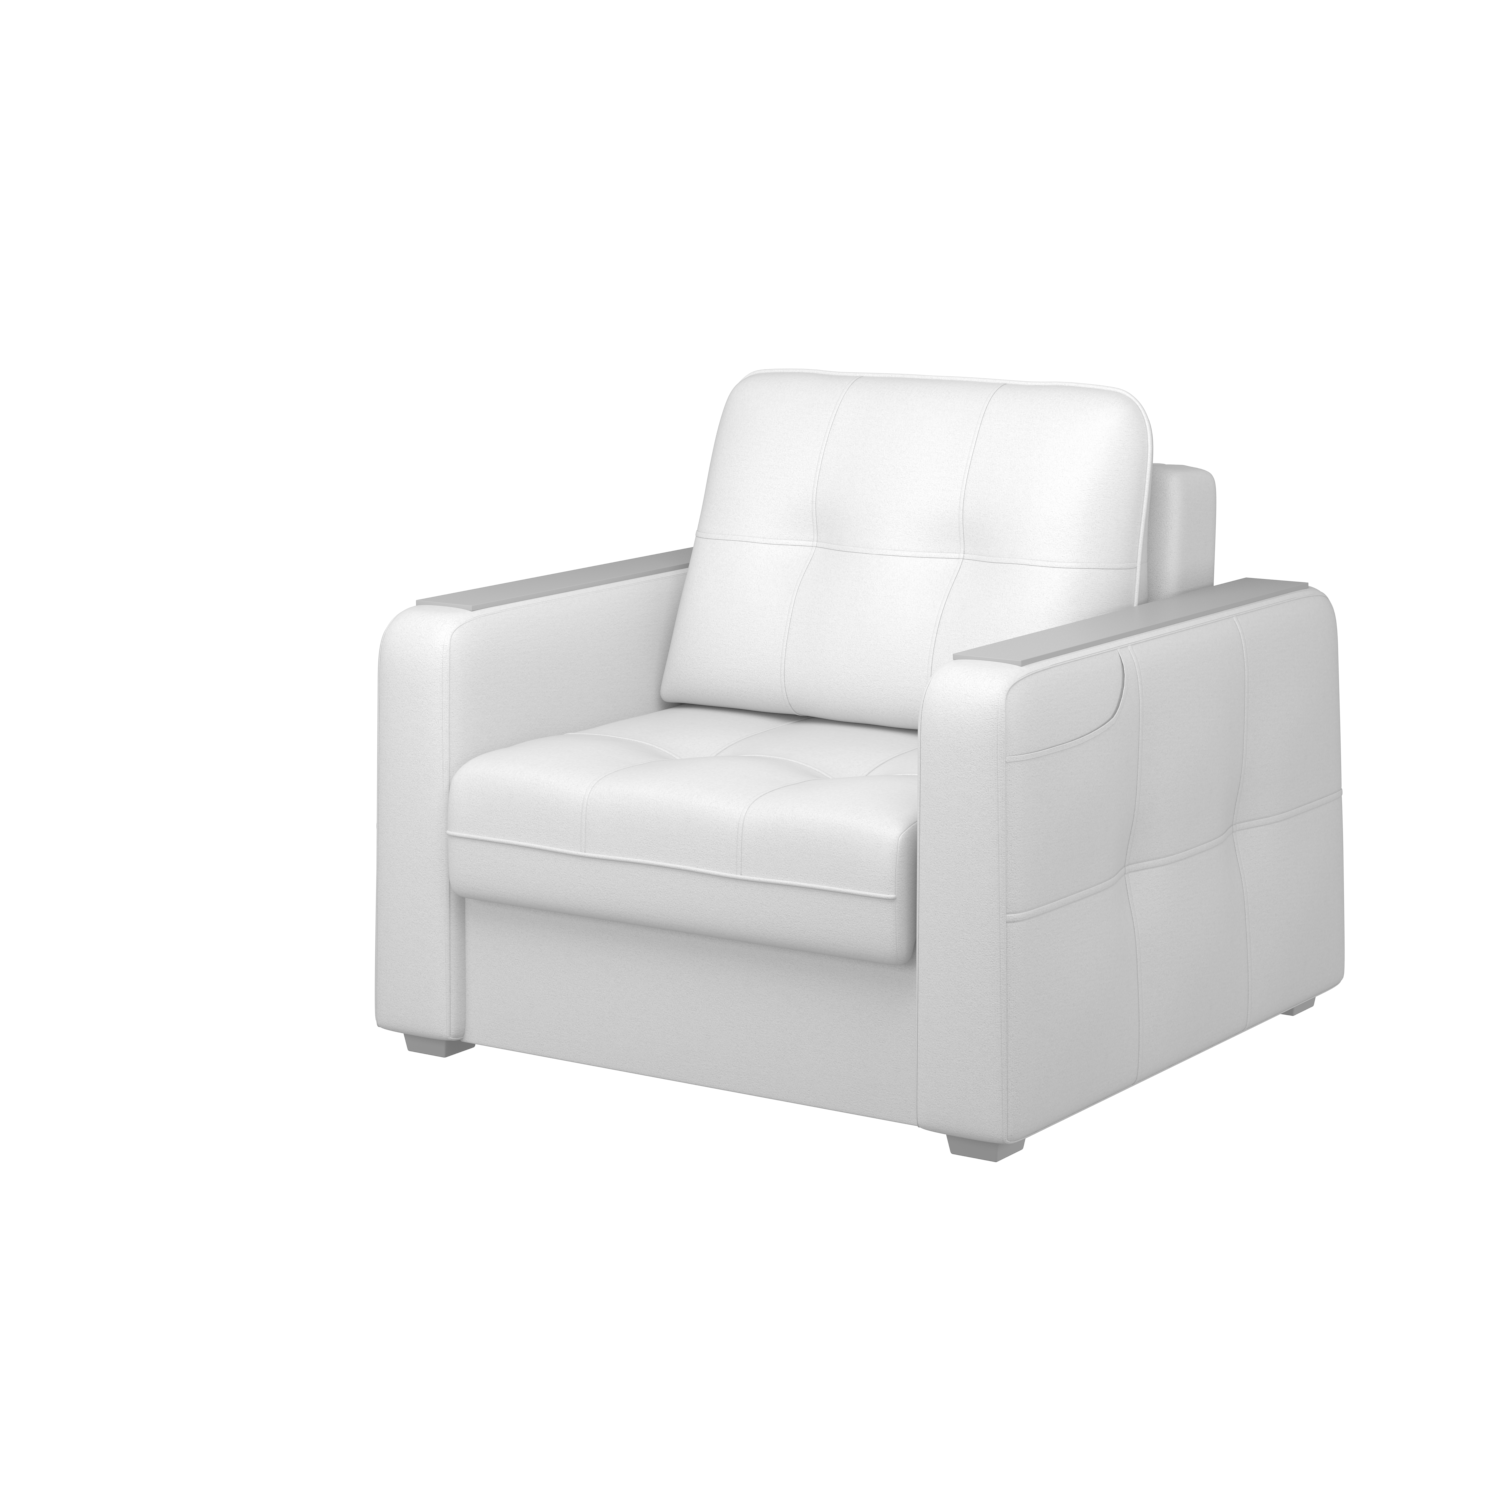 Мягкое кресло с ящиком Киль-3, кКЛ01.кш974.974у